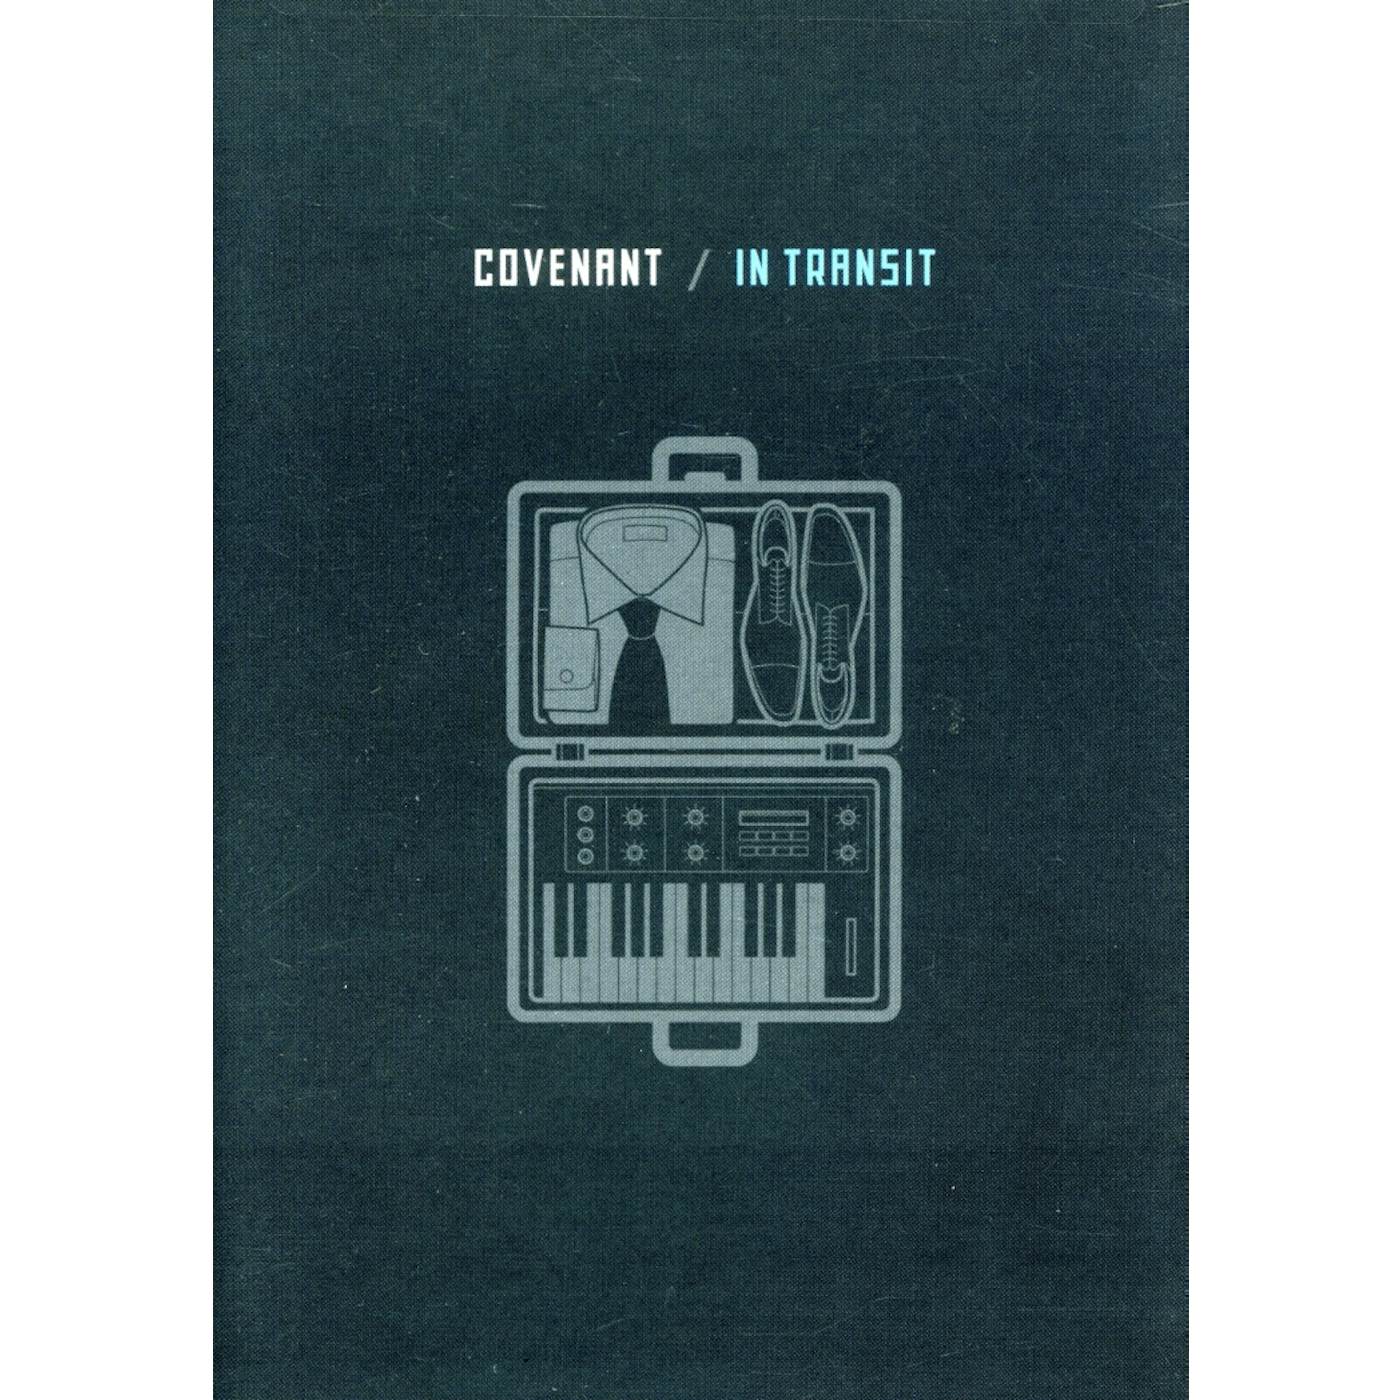 Covenant IN TRANSIT DVD